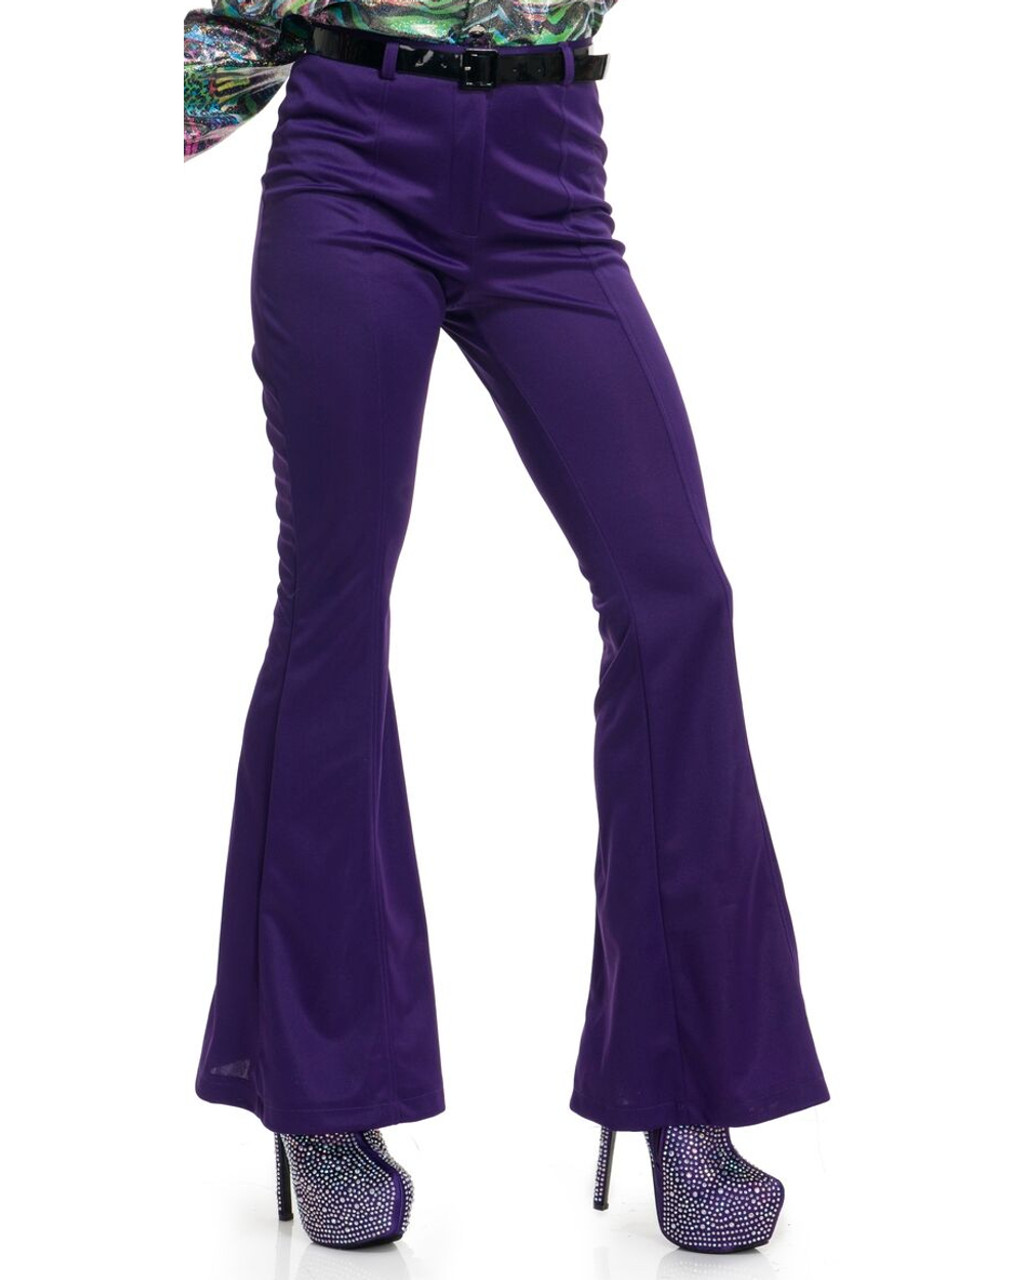 Womens 70s High Waisted Purple Disco Pants